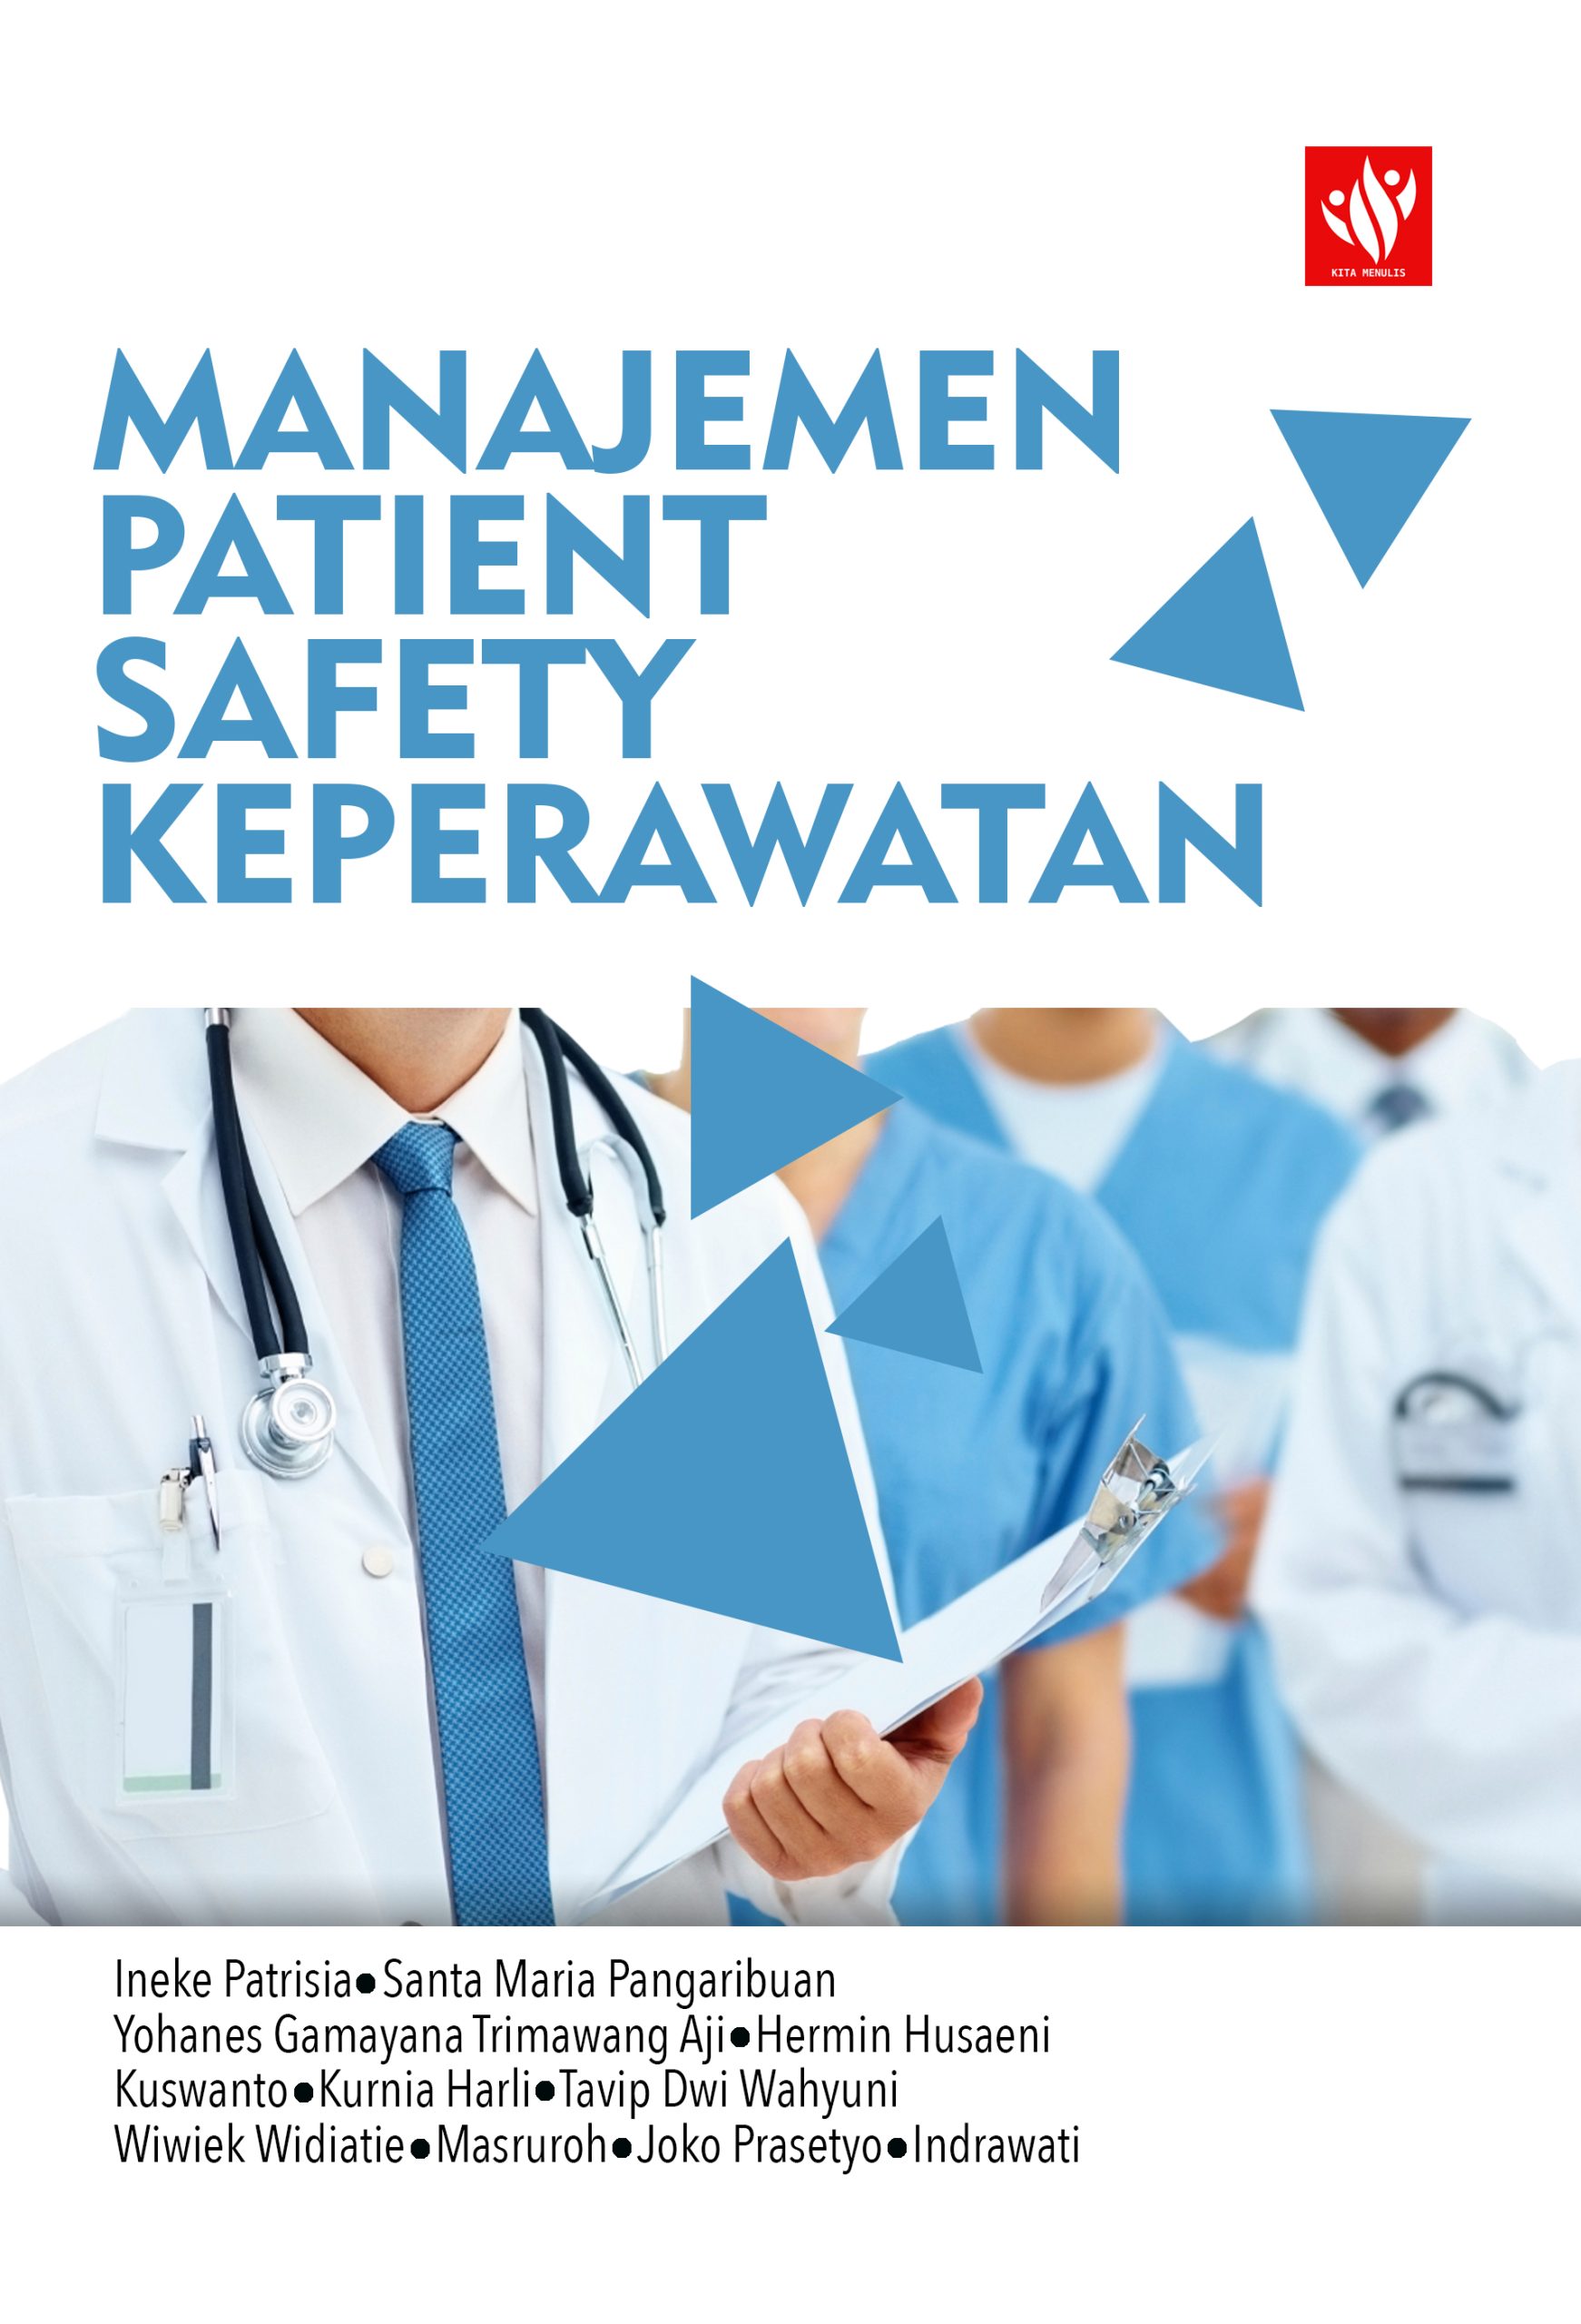 Manajemen Patient Safety Keperawatan Kita Menulis